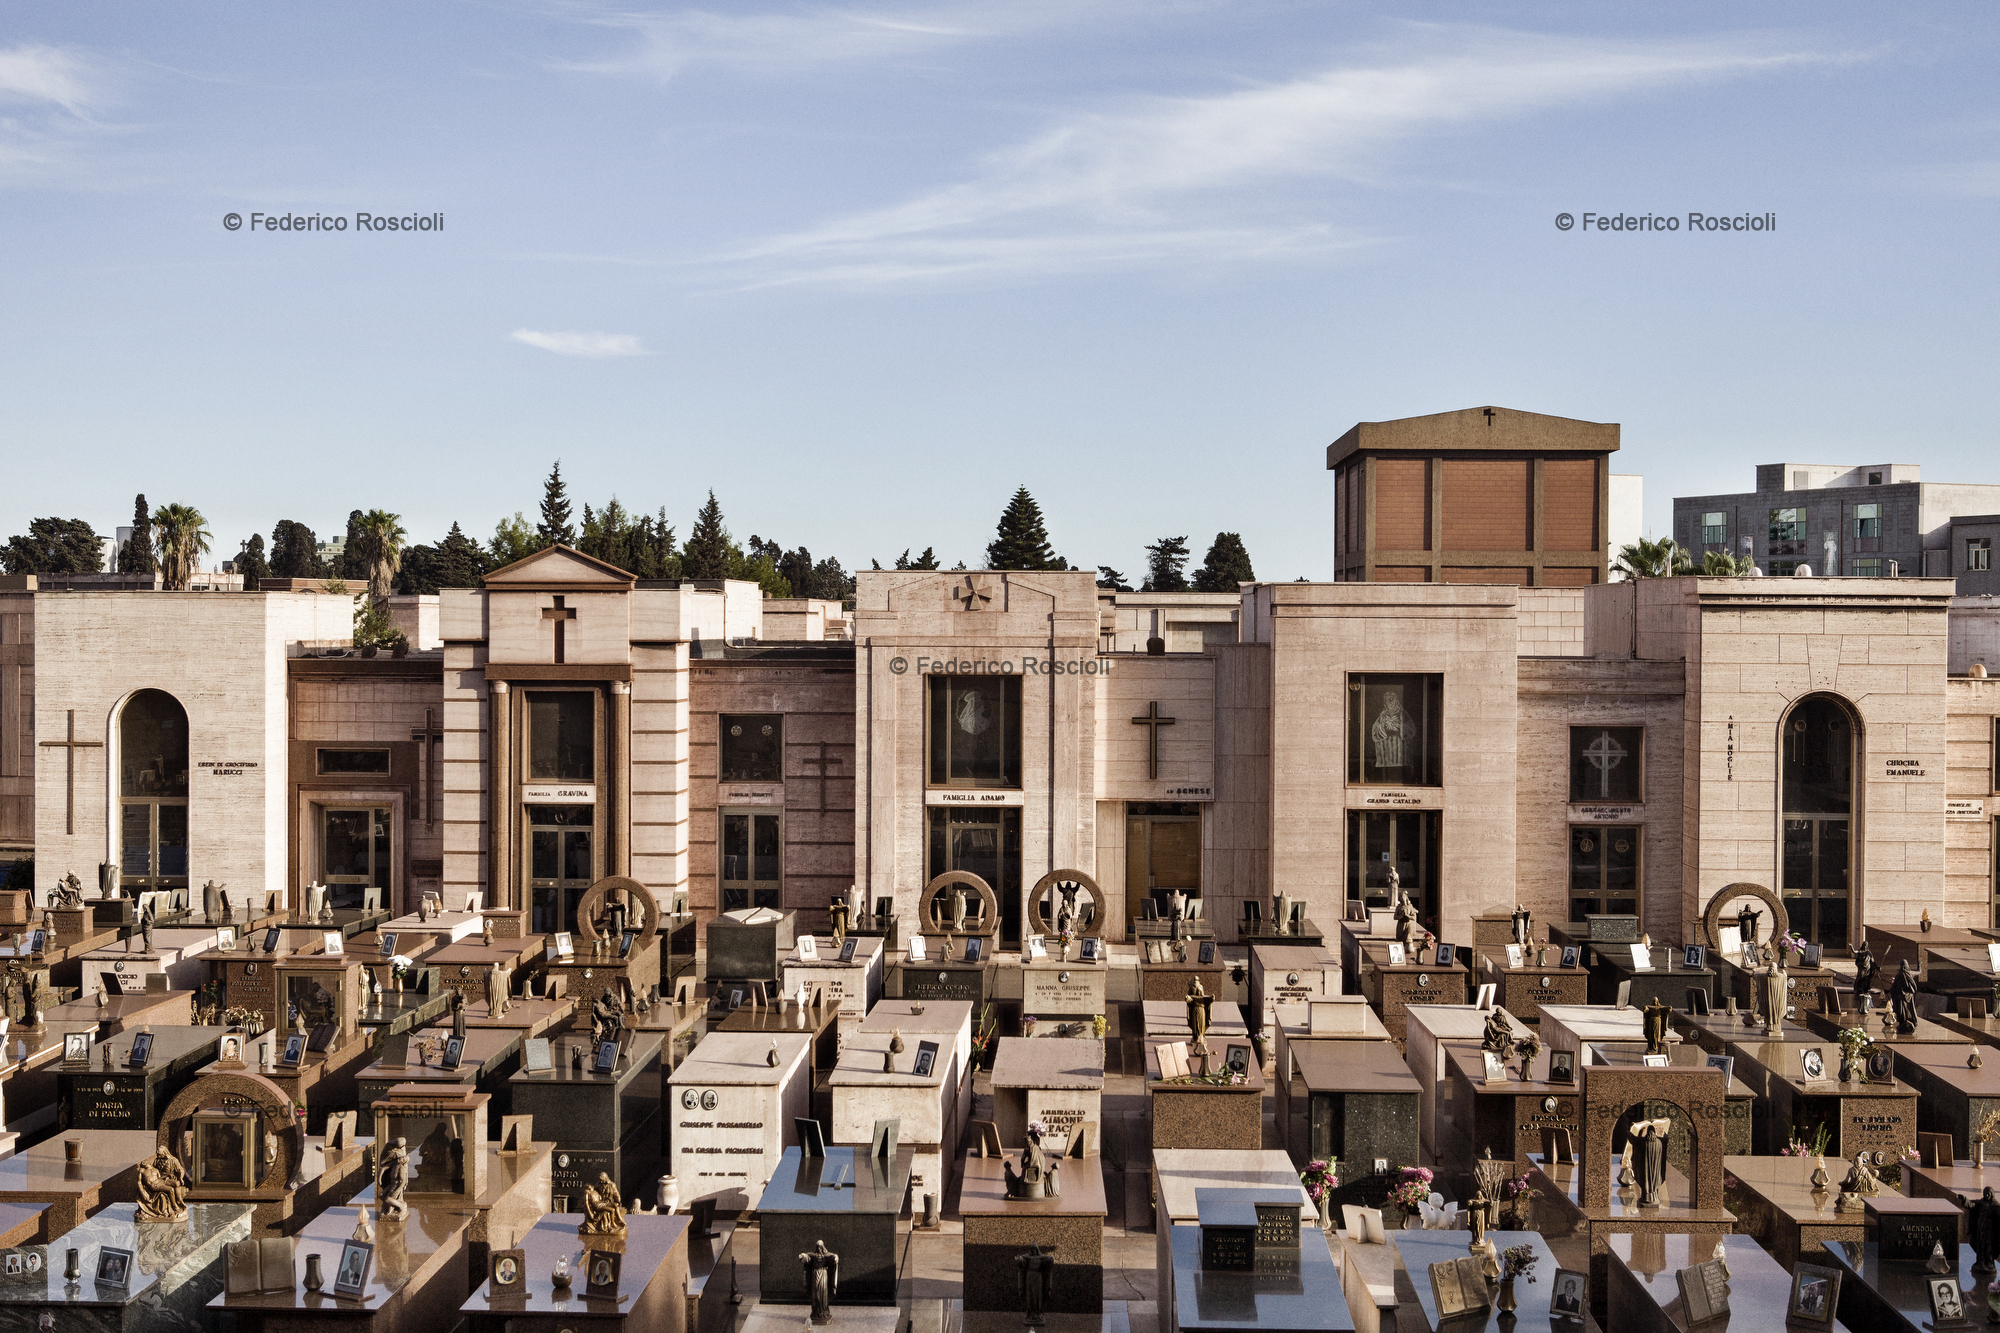 Taranto, Italy, September 21, 2013. View of the cemetery of Taranto.